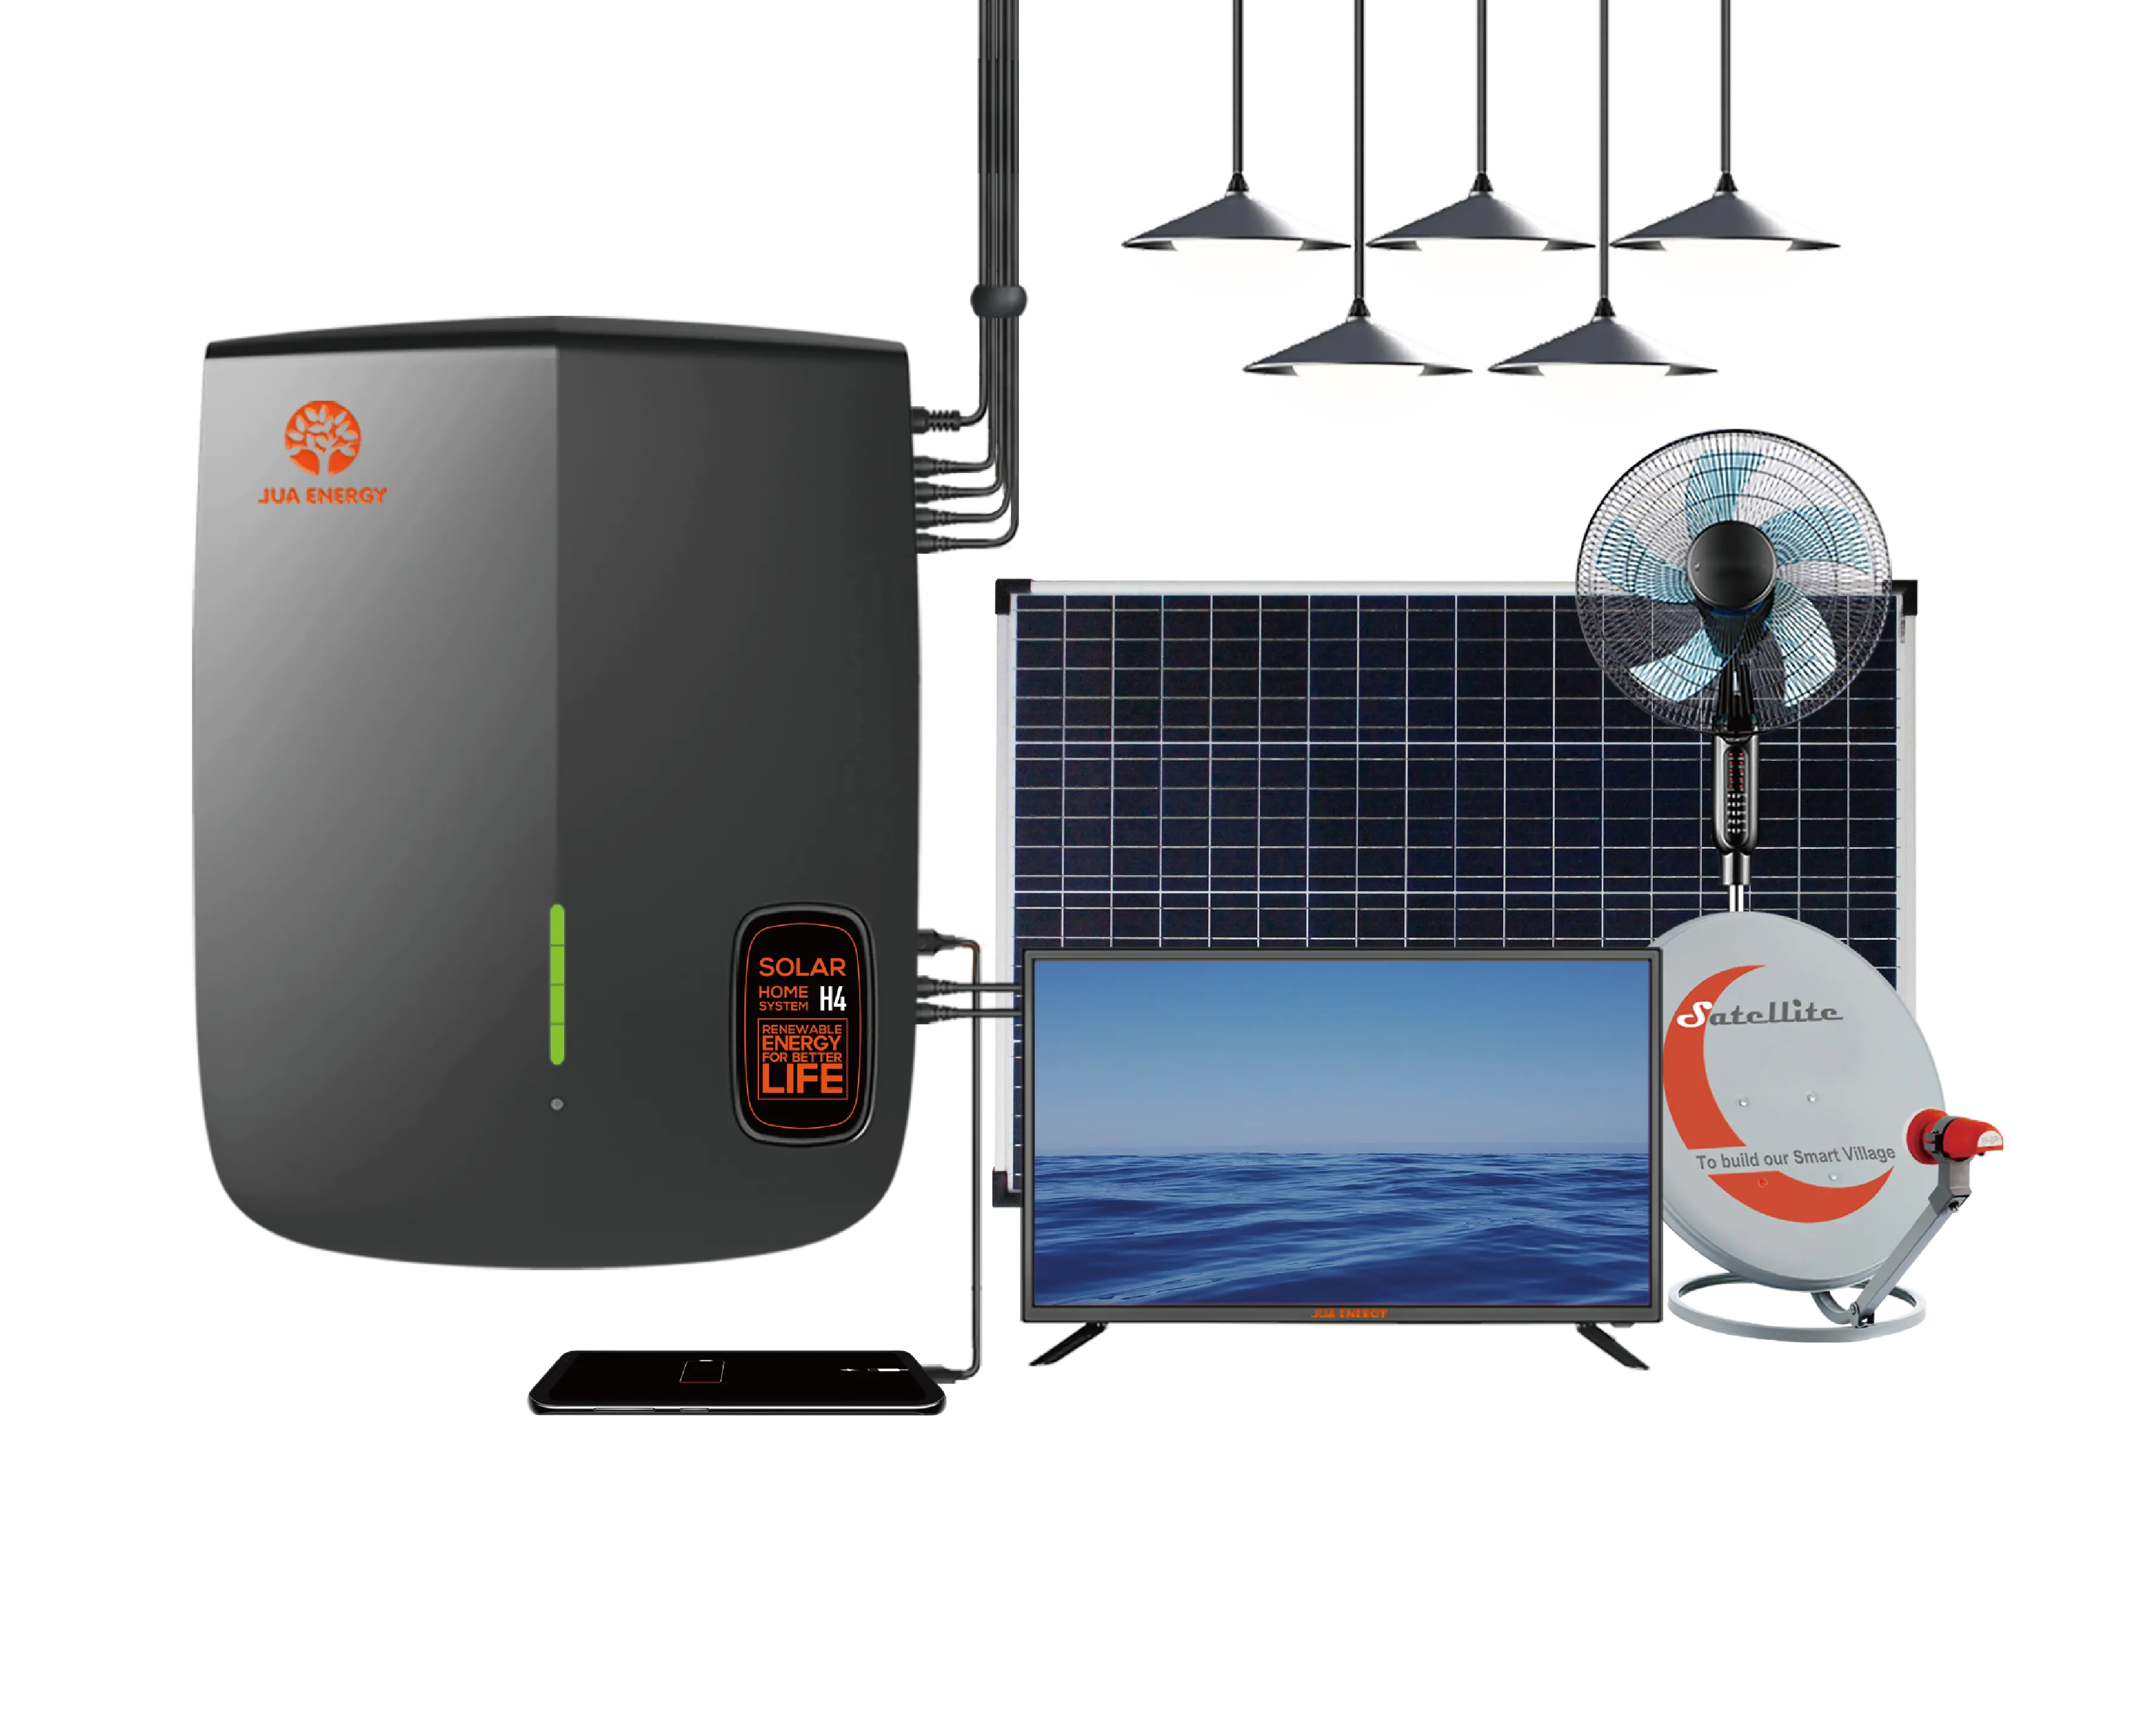 Jua energia solar 12v dc 32 polegadas, kit de iluminação doméstica com ventilador, recarregável, sistema de energia solar para vila africana rural